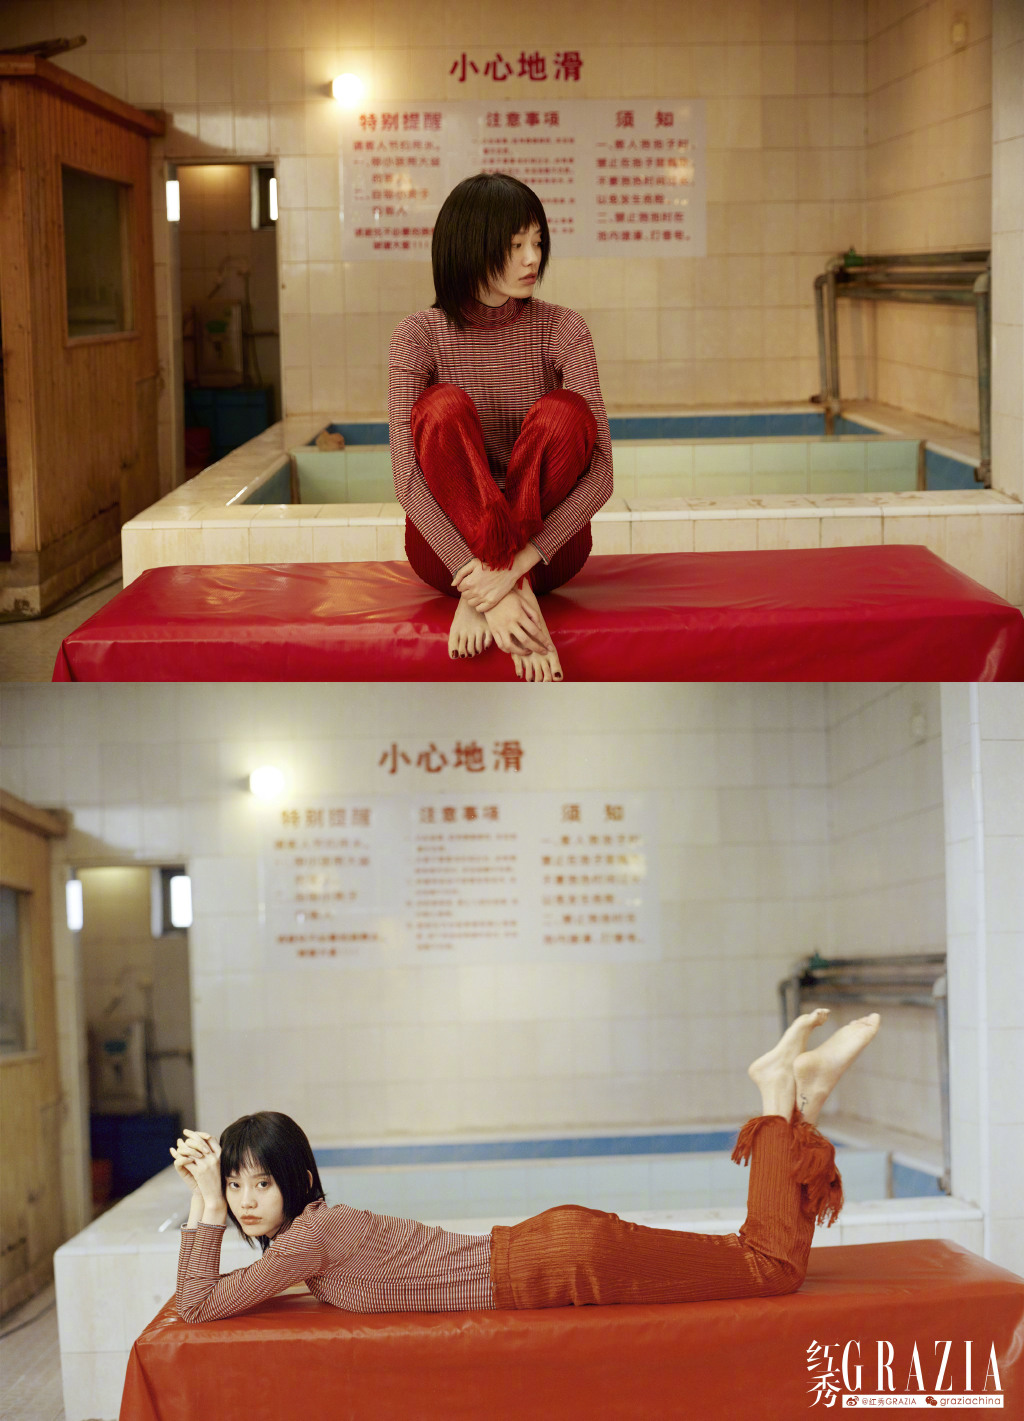 上世纪澡堂子照片,北京老澡堂子照片(2) - 伤感说说吧